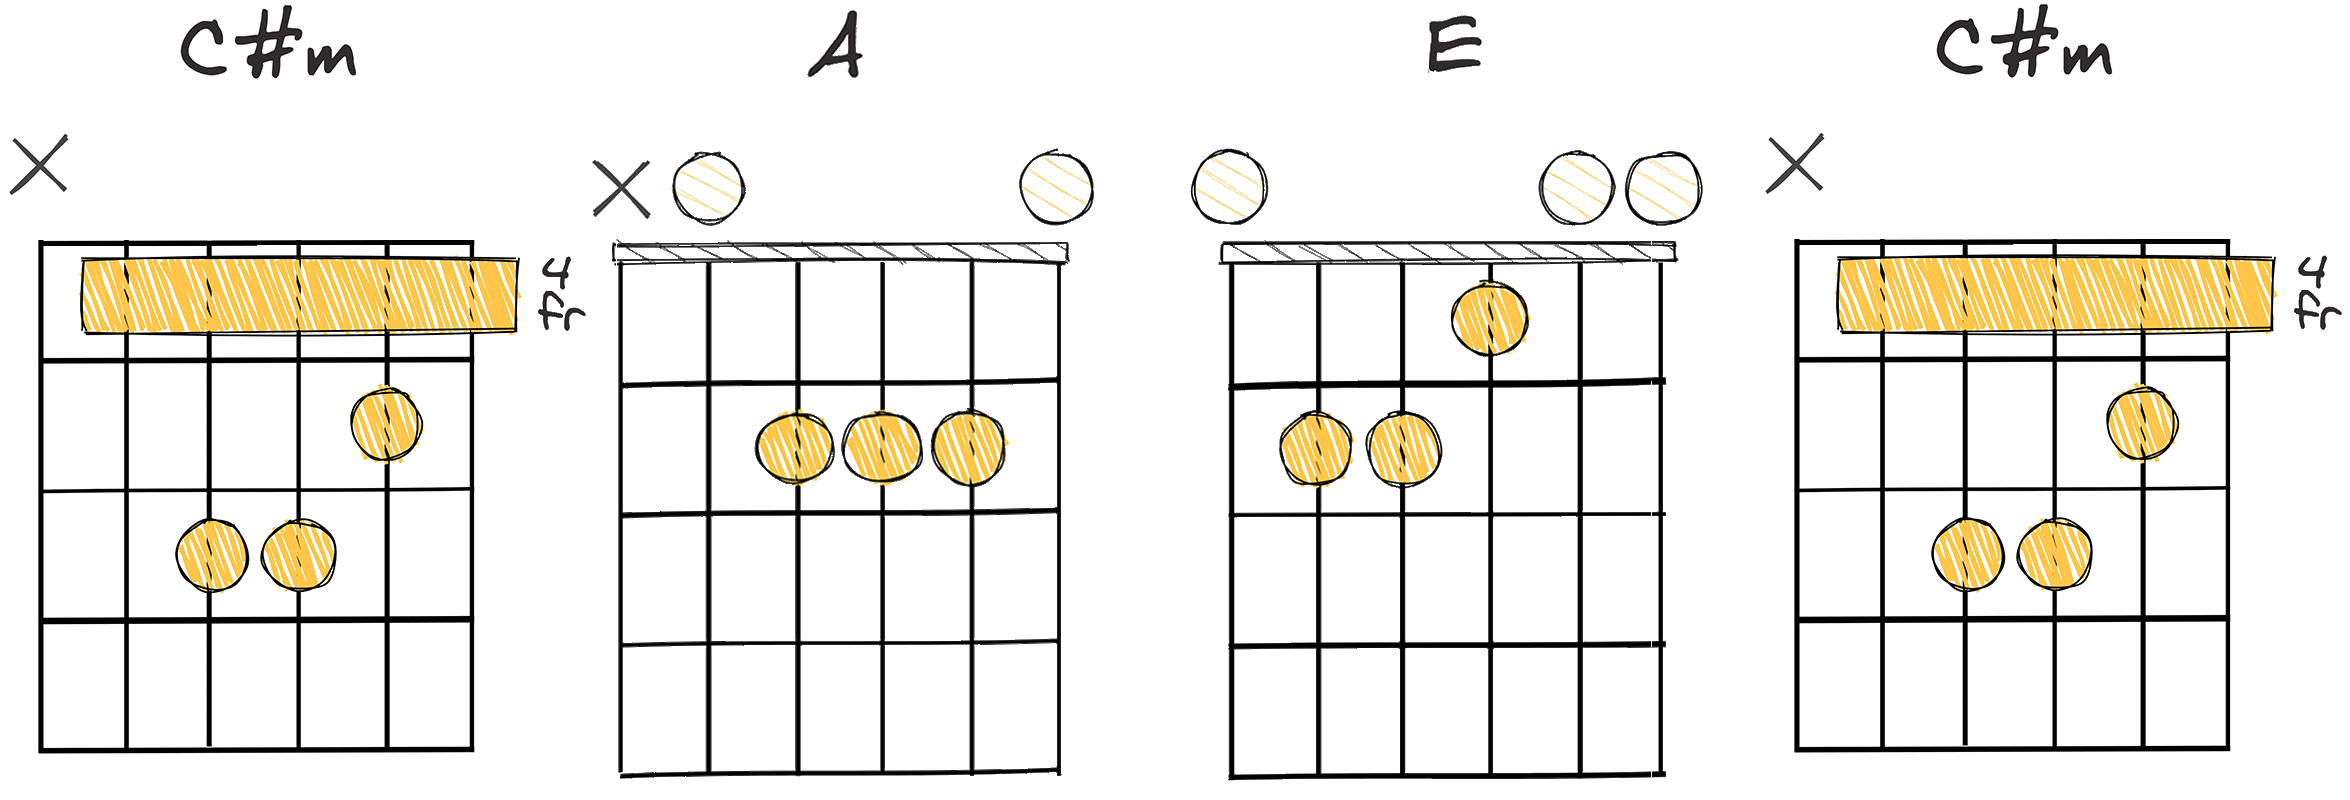 vi-IV-I-VI (6-4-1-6) chords diagram